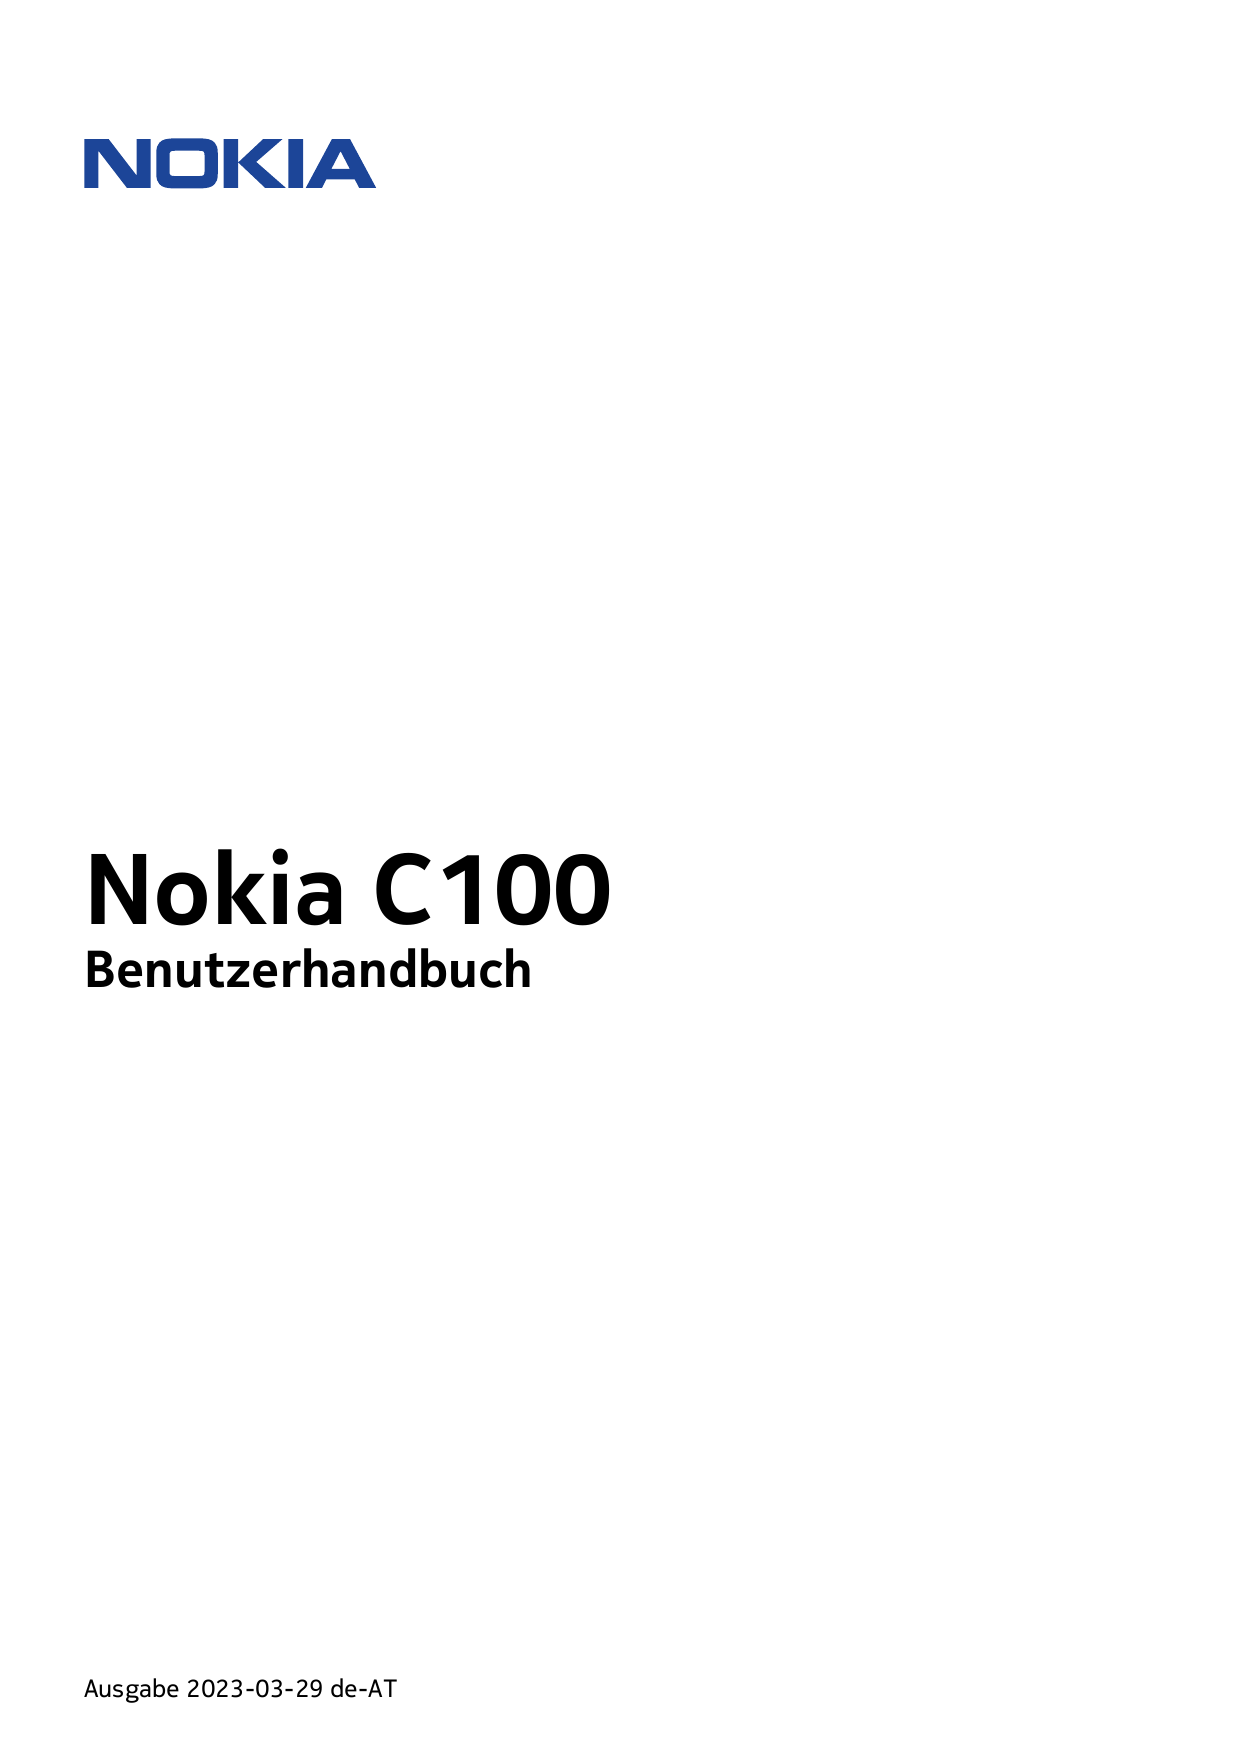 Nokia C100BenutzerhandbuchAusgabe 2023-03-29 de-AT